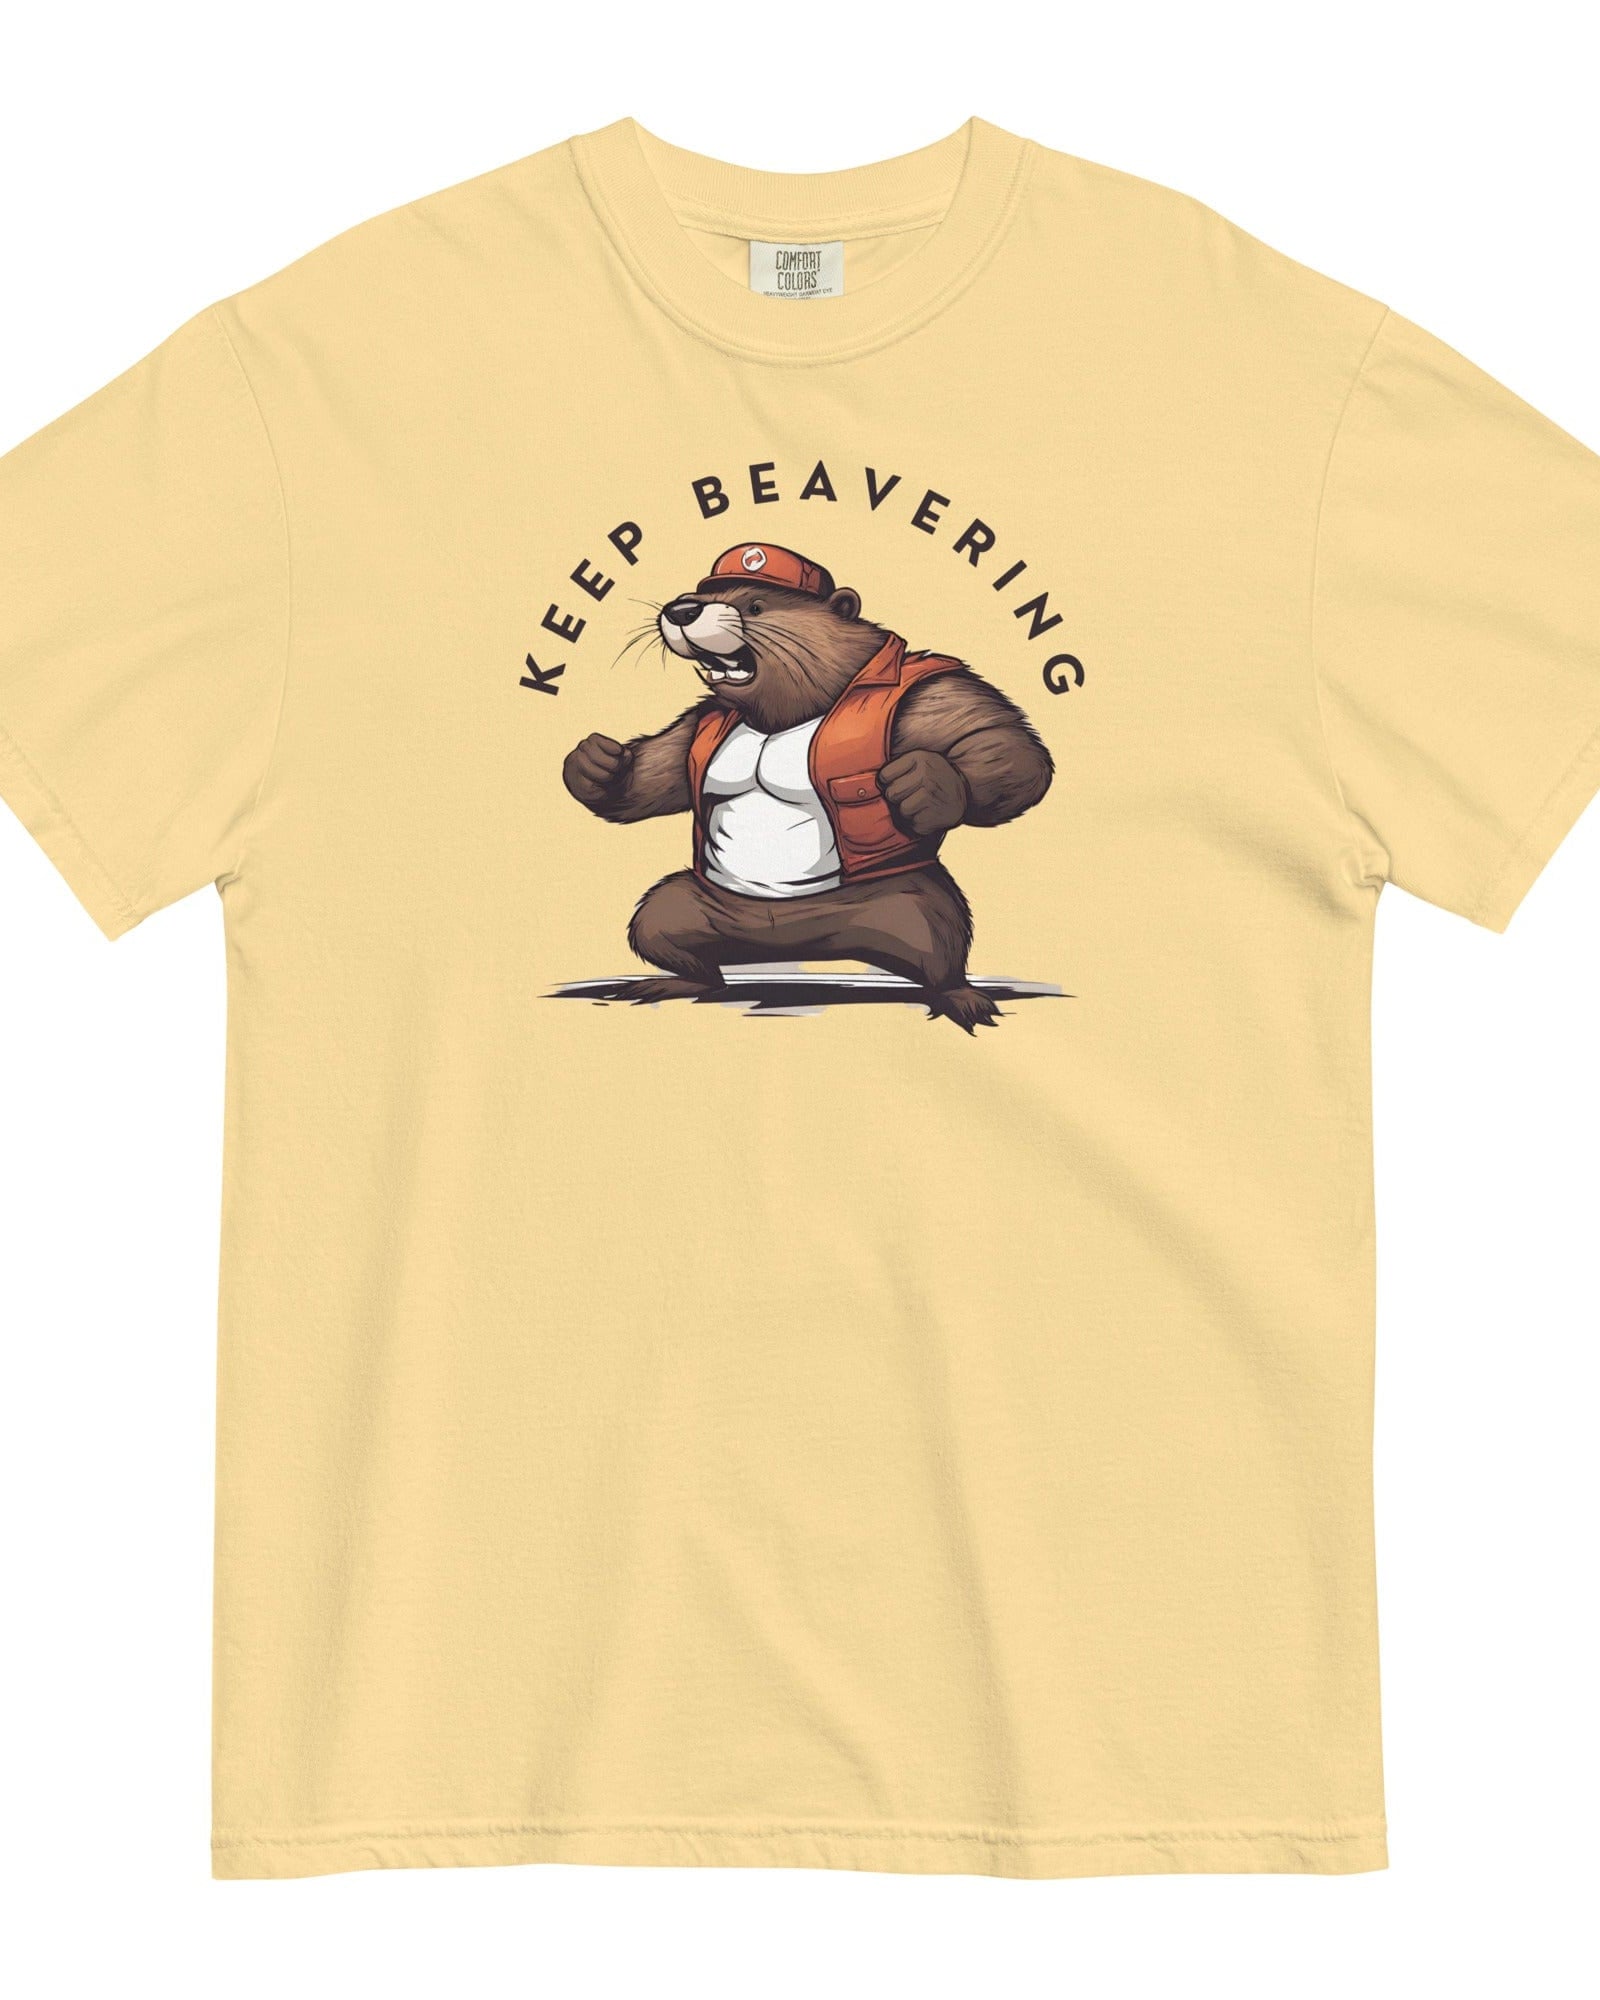 Keep Beavering T-shirt | Garment-dyed Heavyweight Cotton Butter / S Shirts & Tops Jolly & Goode